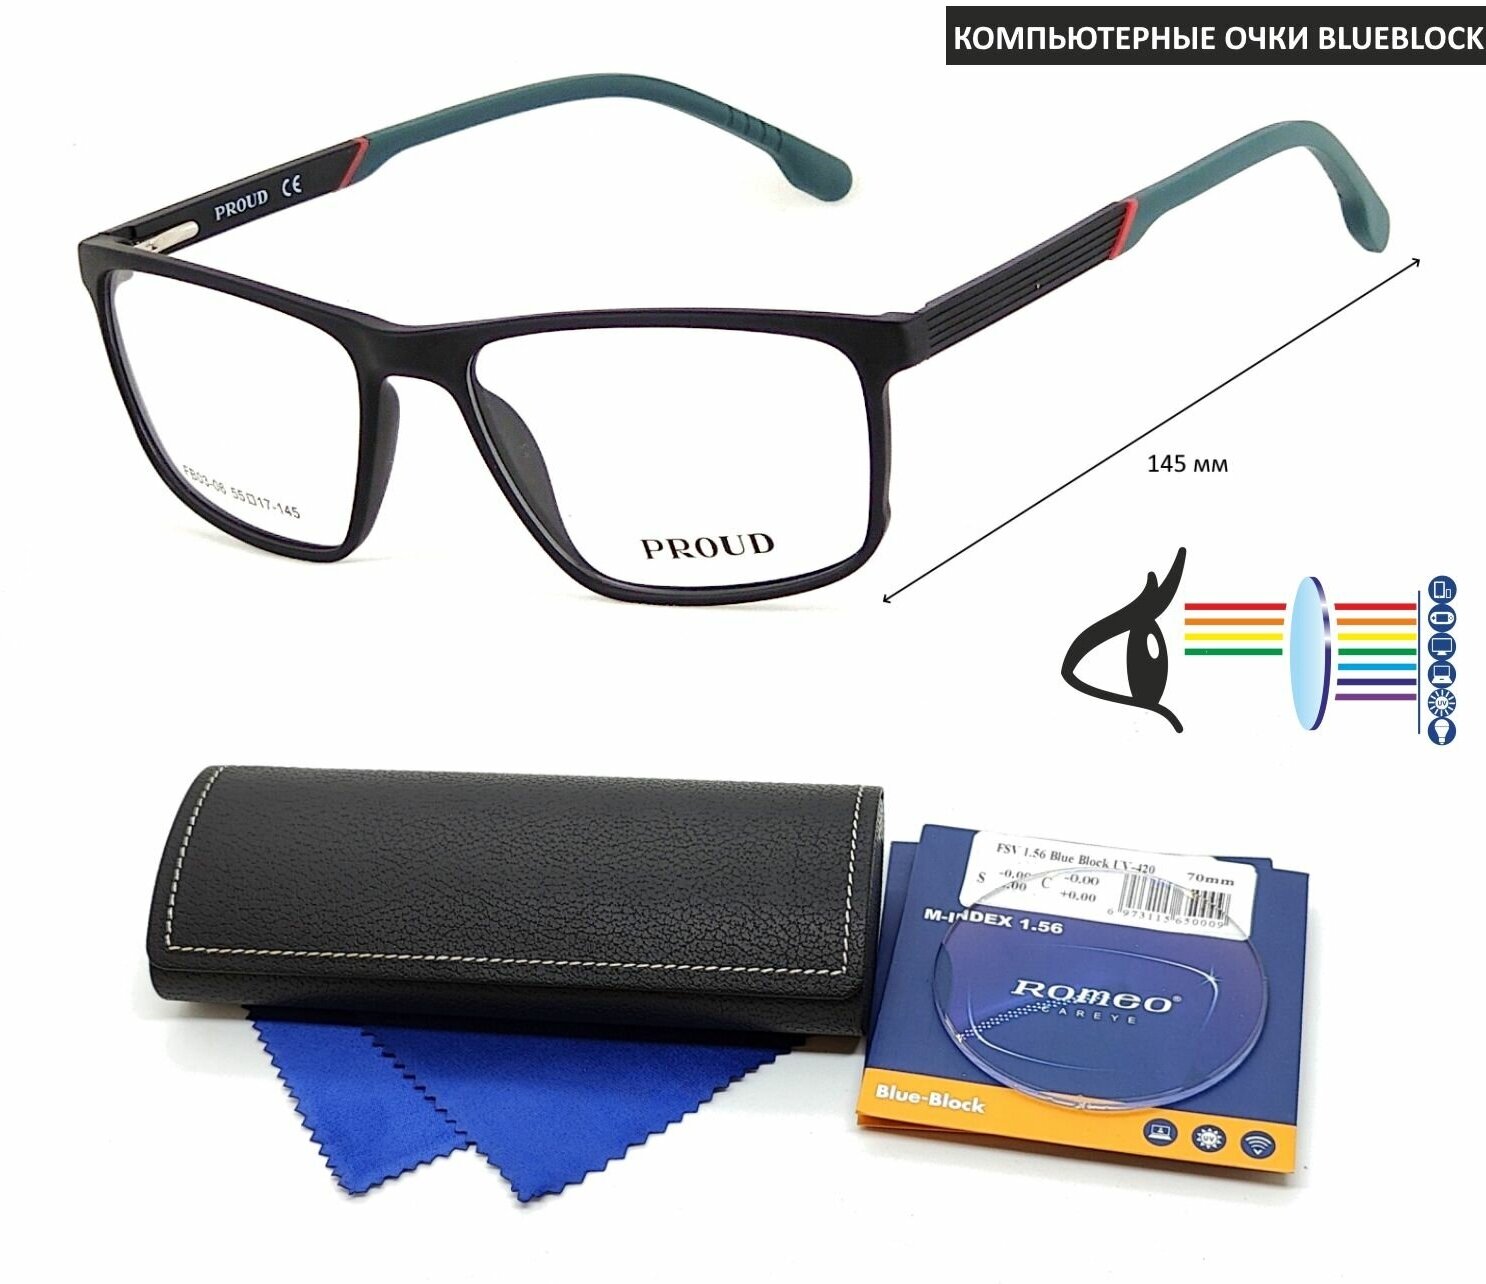 Компьютерные очки с футляром на магните PROUD мод. FB03-06 Цвет 1 с линзами ROMEO 1.56 Blue Block -1.50 РЦ 64-66